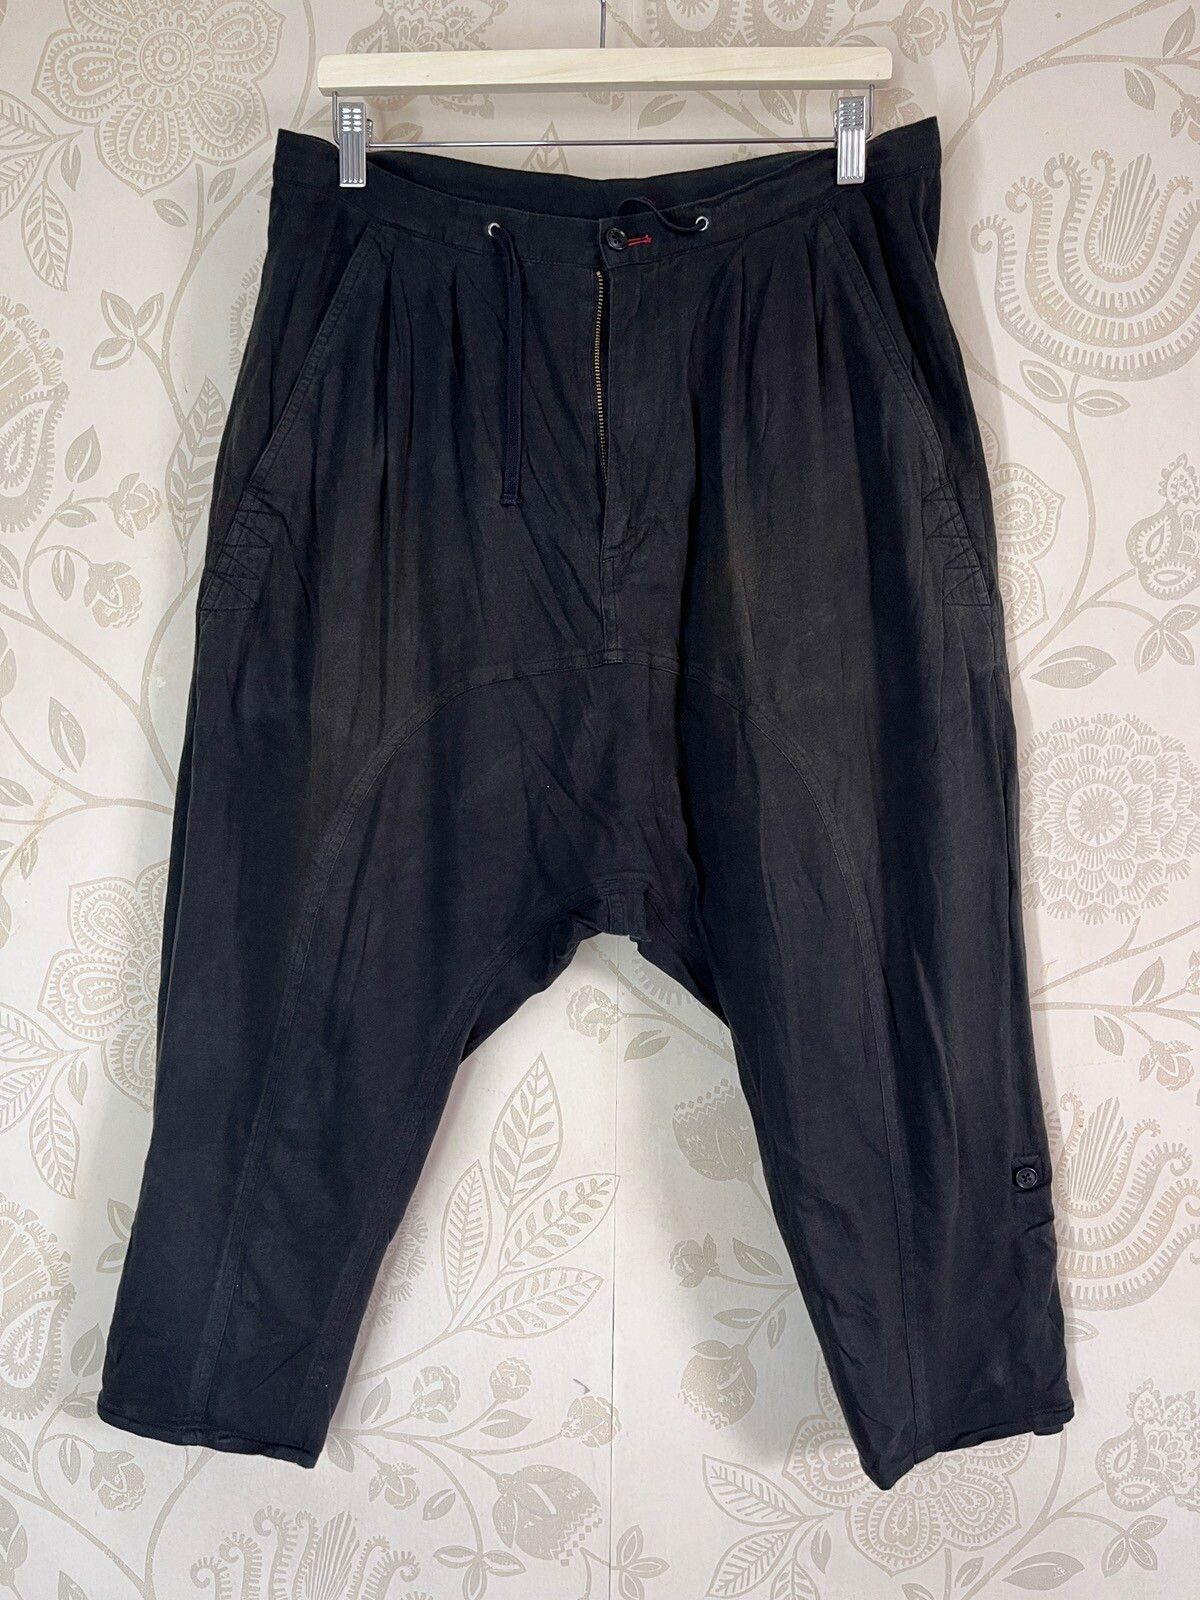 Stylo PPFM Long Short Pants Vintage - 1